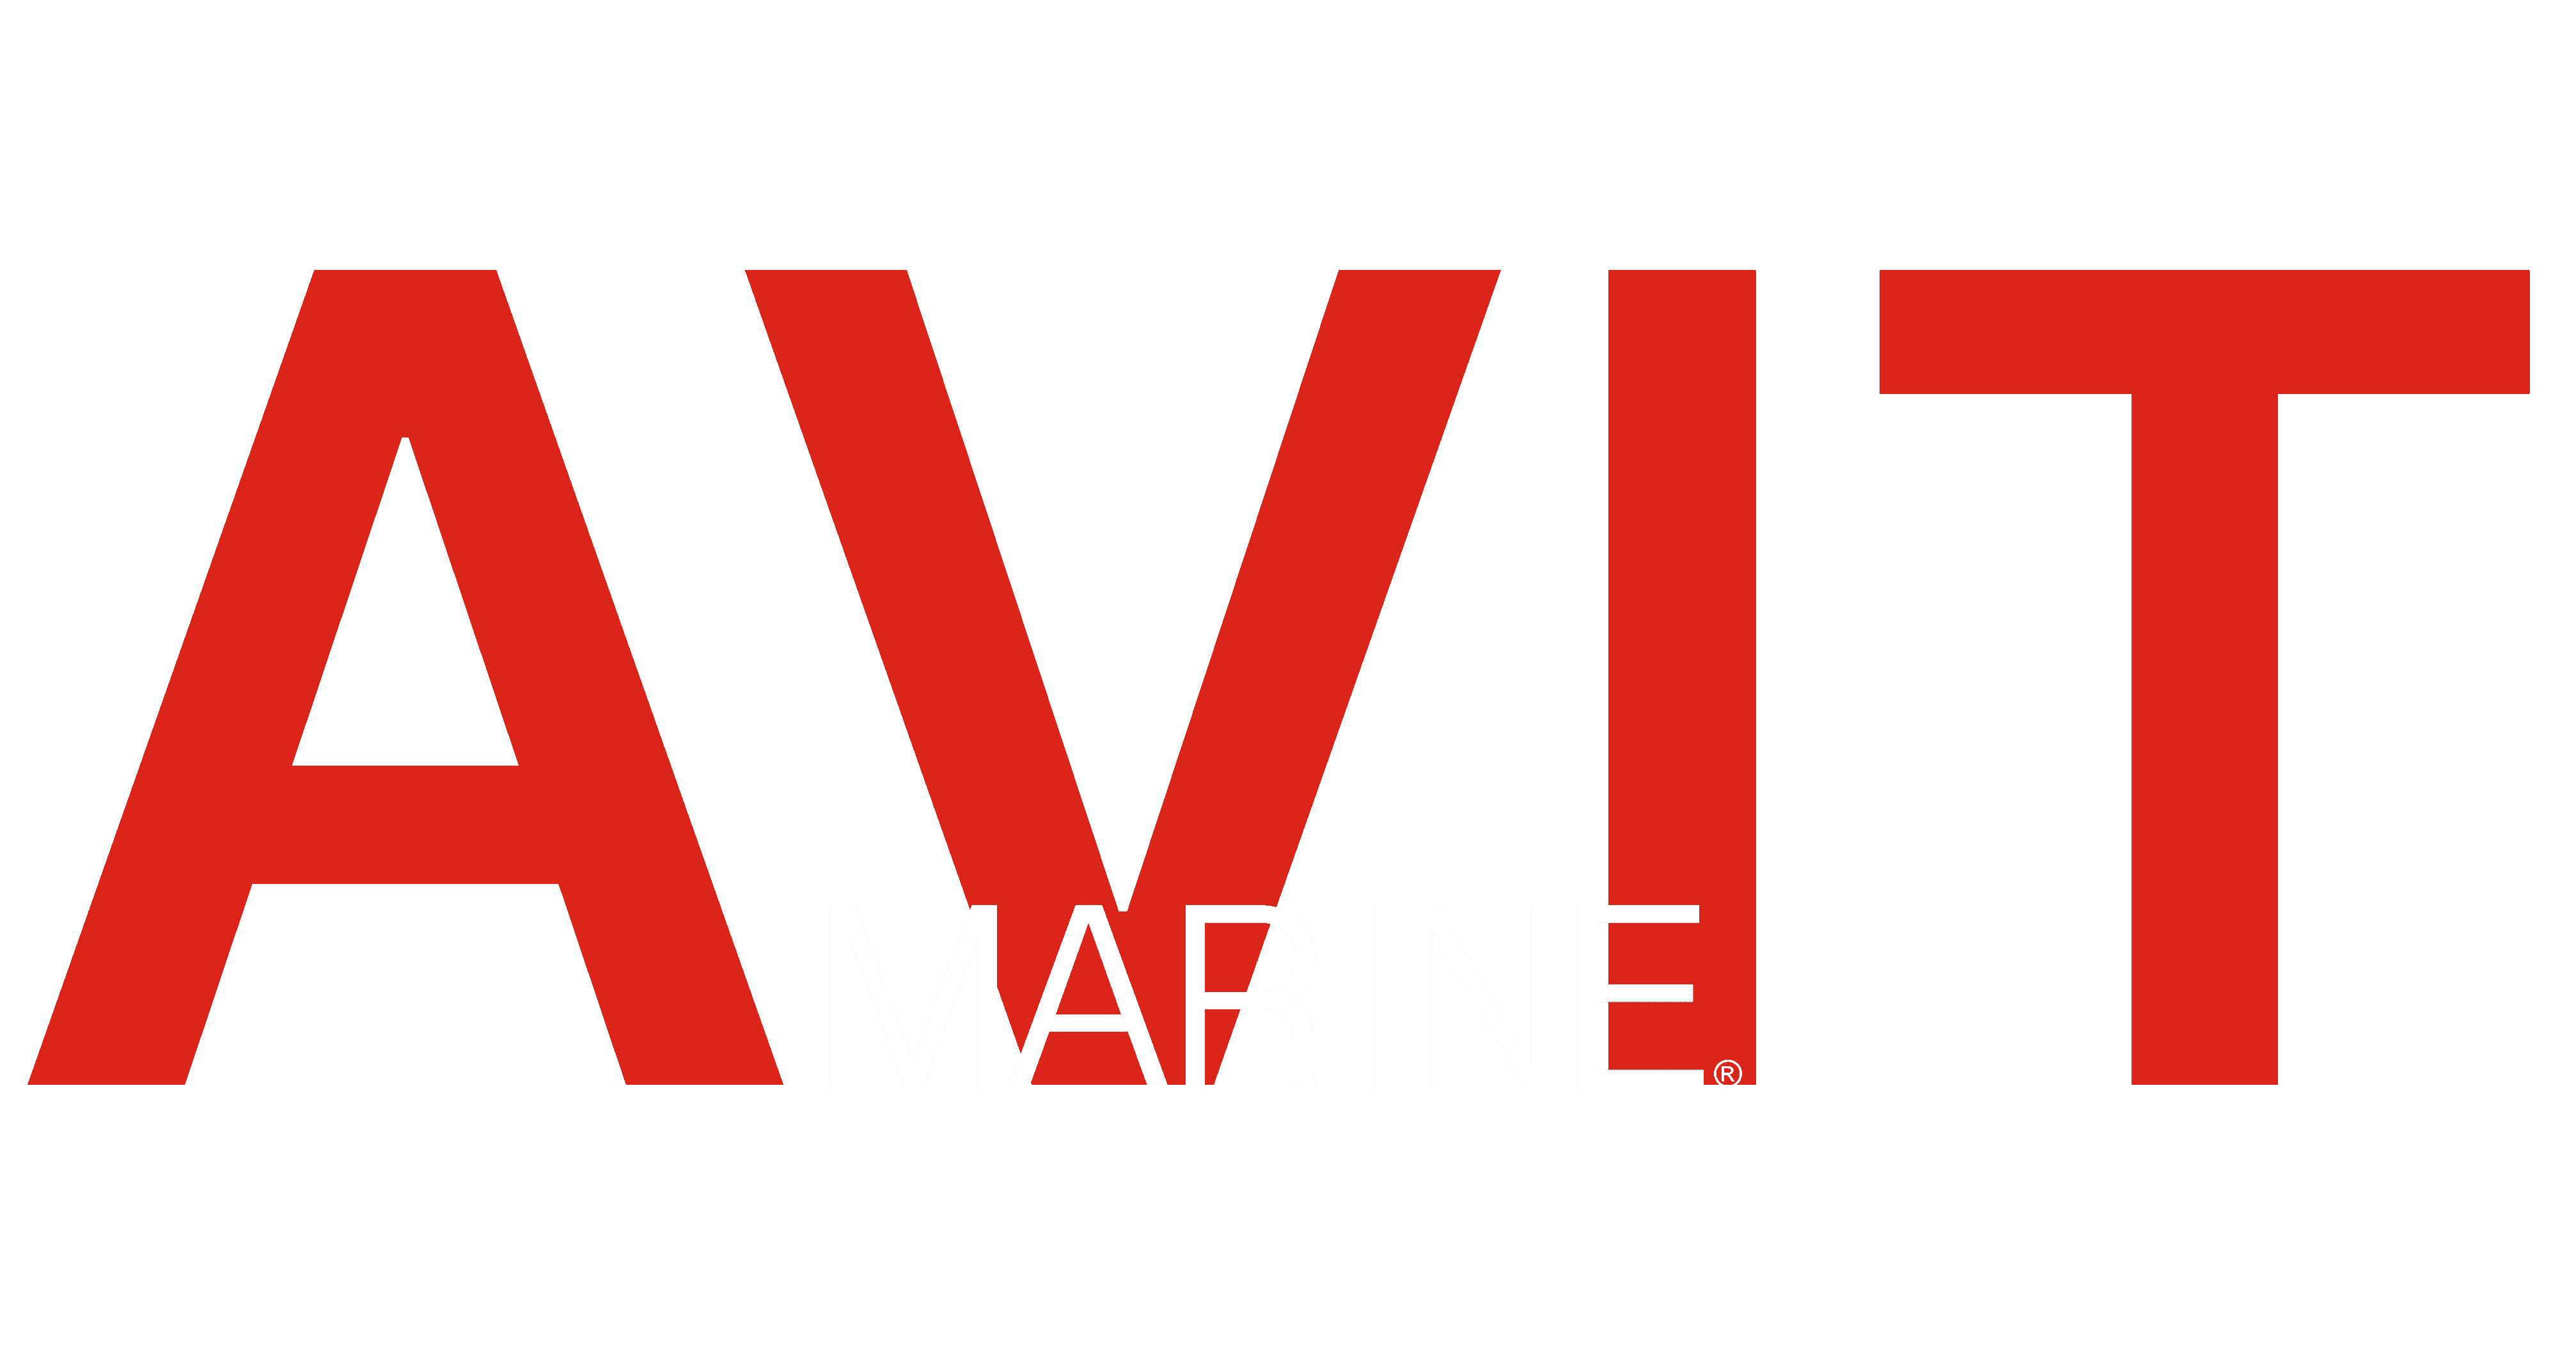 Avit Marine logo